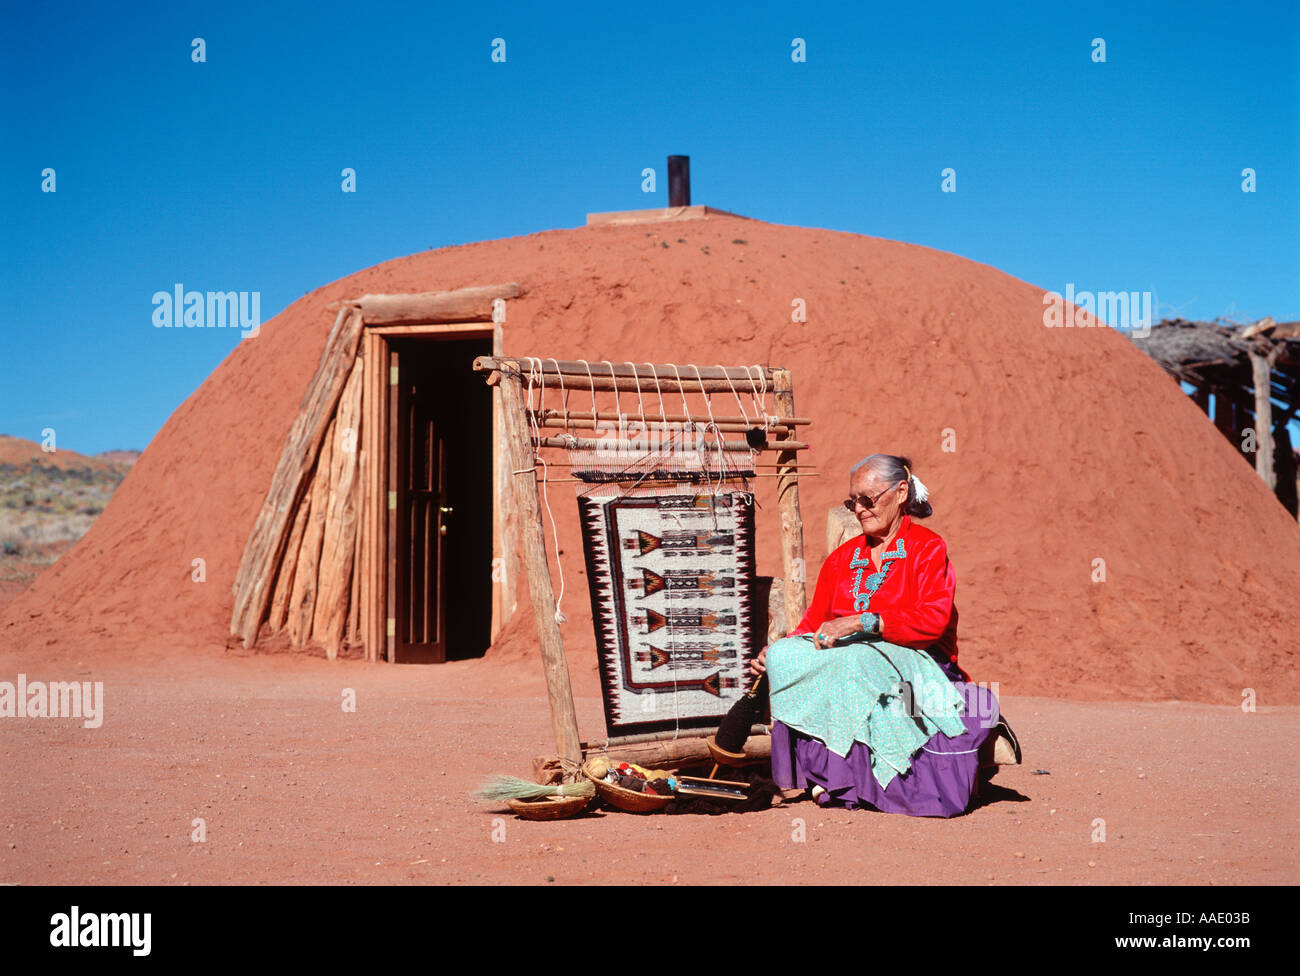 Une vieille femme Amérindienne tisse un tapis Navajo traditionnel à l'extérieur de son hogan dans le nord de l'Arizona Banque D'Images